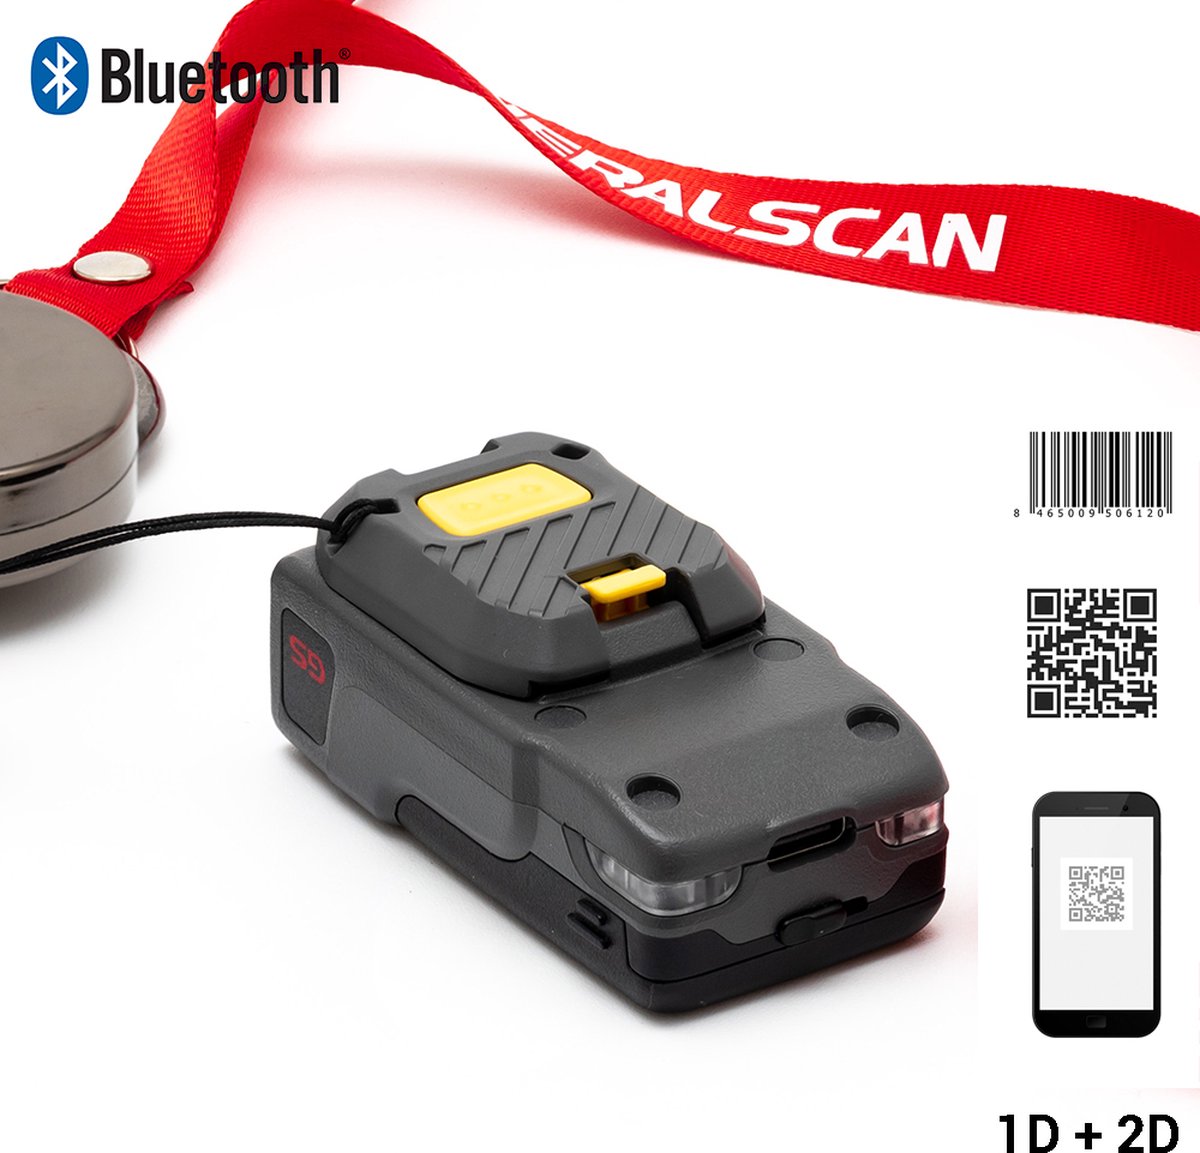 Generalscan GS R3521 - Bluetooth 2D Barcode scanner - Thumb Button - 2D-barcodes - Handscanner